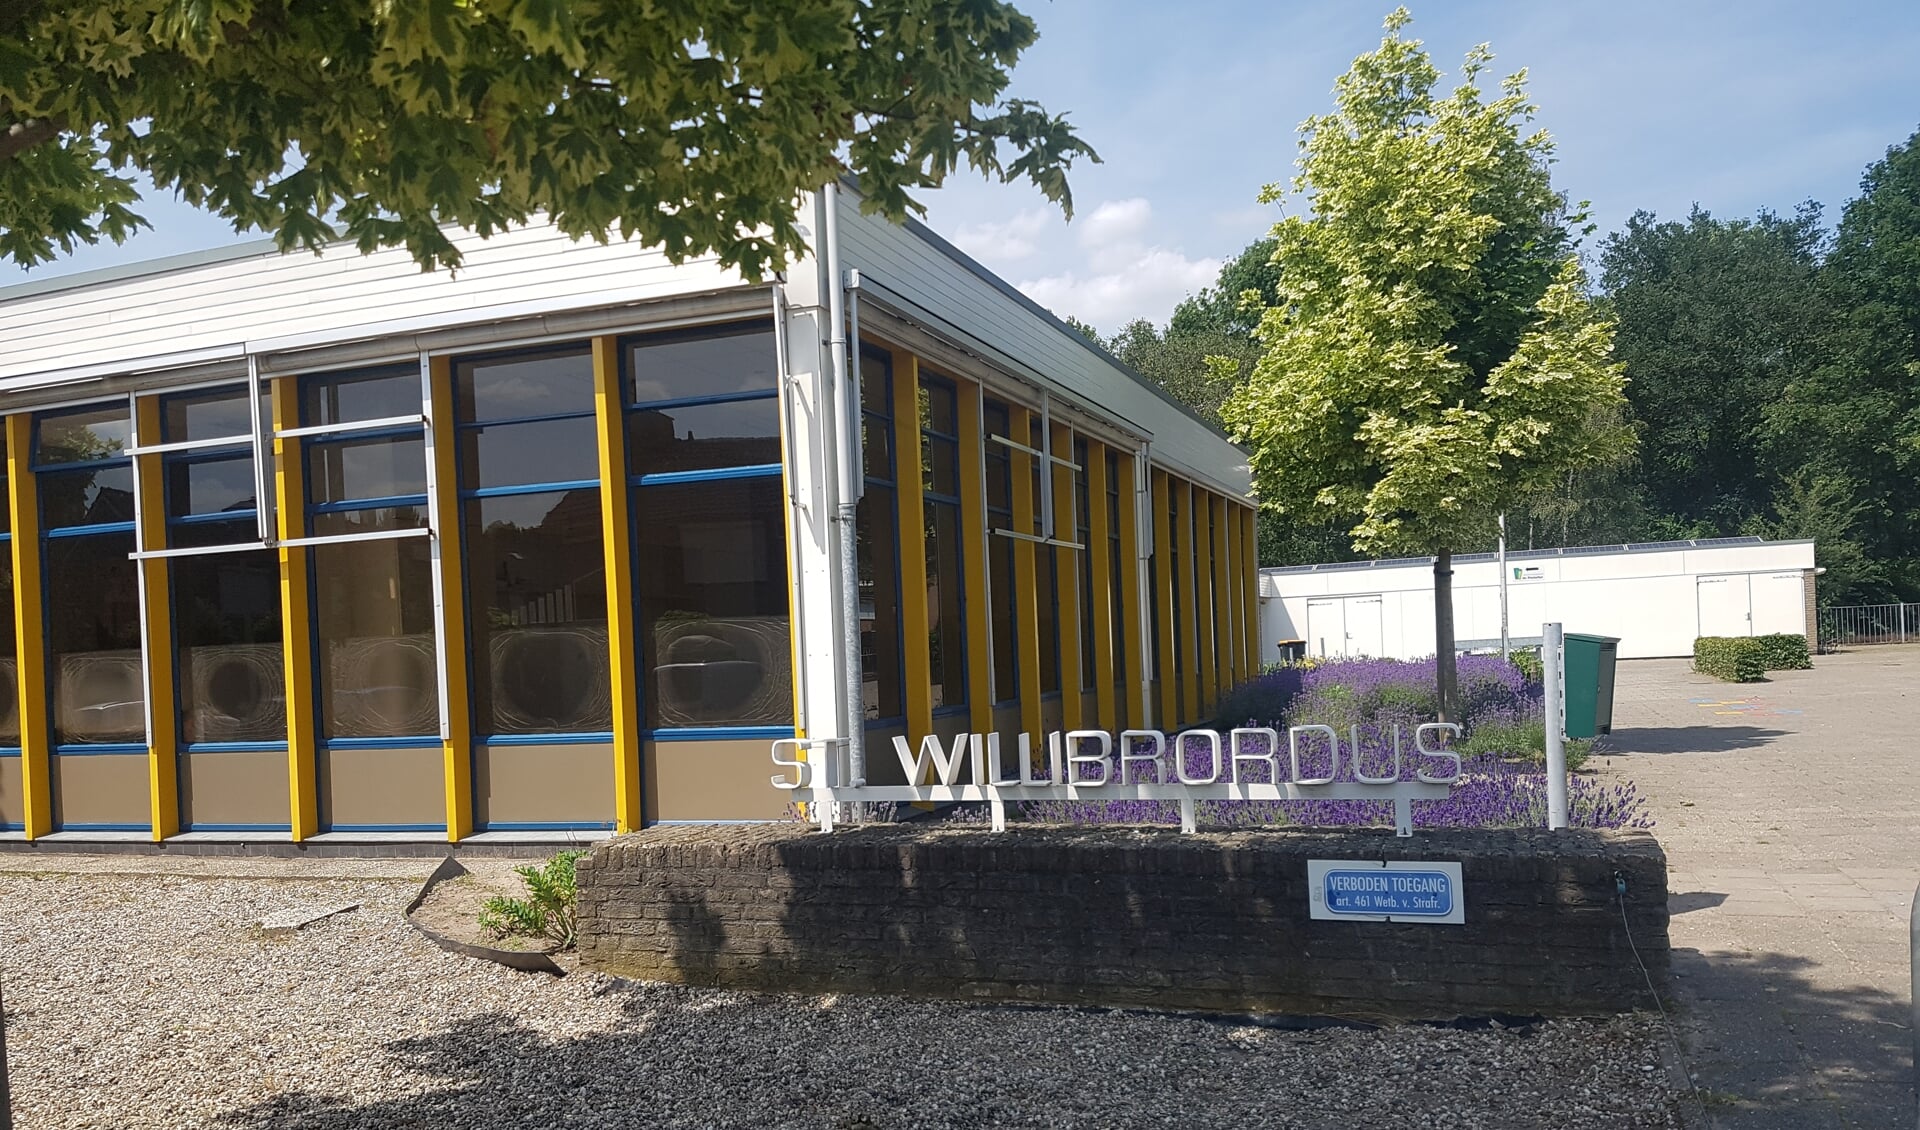 De Willibrordusschool in Groenlo wil graag verbouwen. Foto: Kyra Broshuis